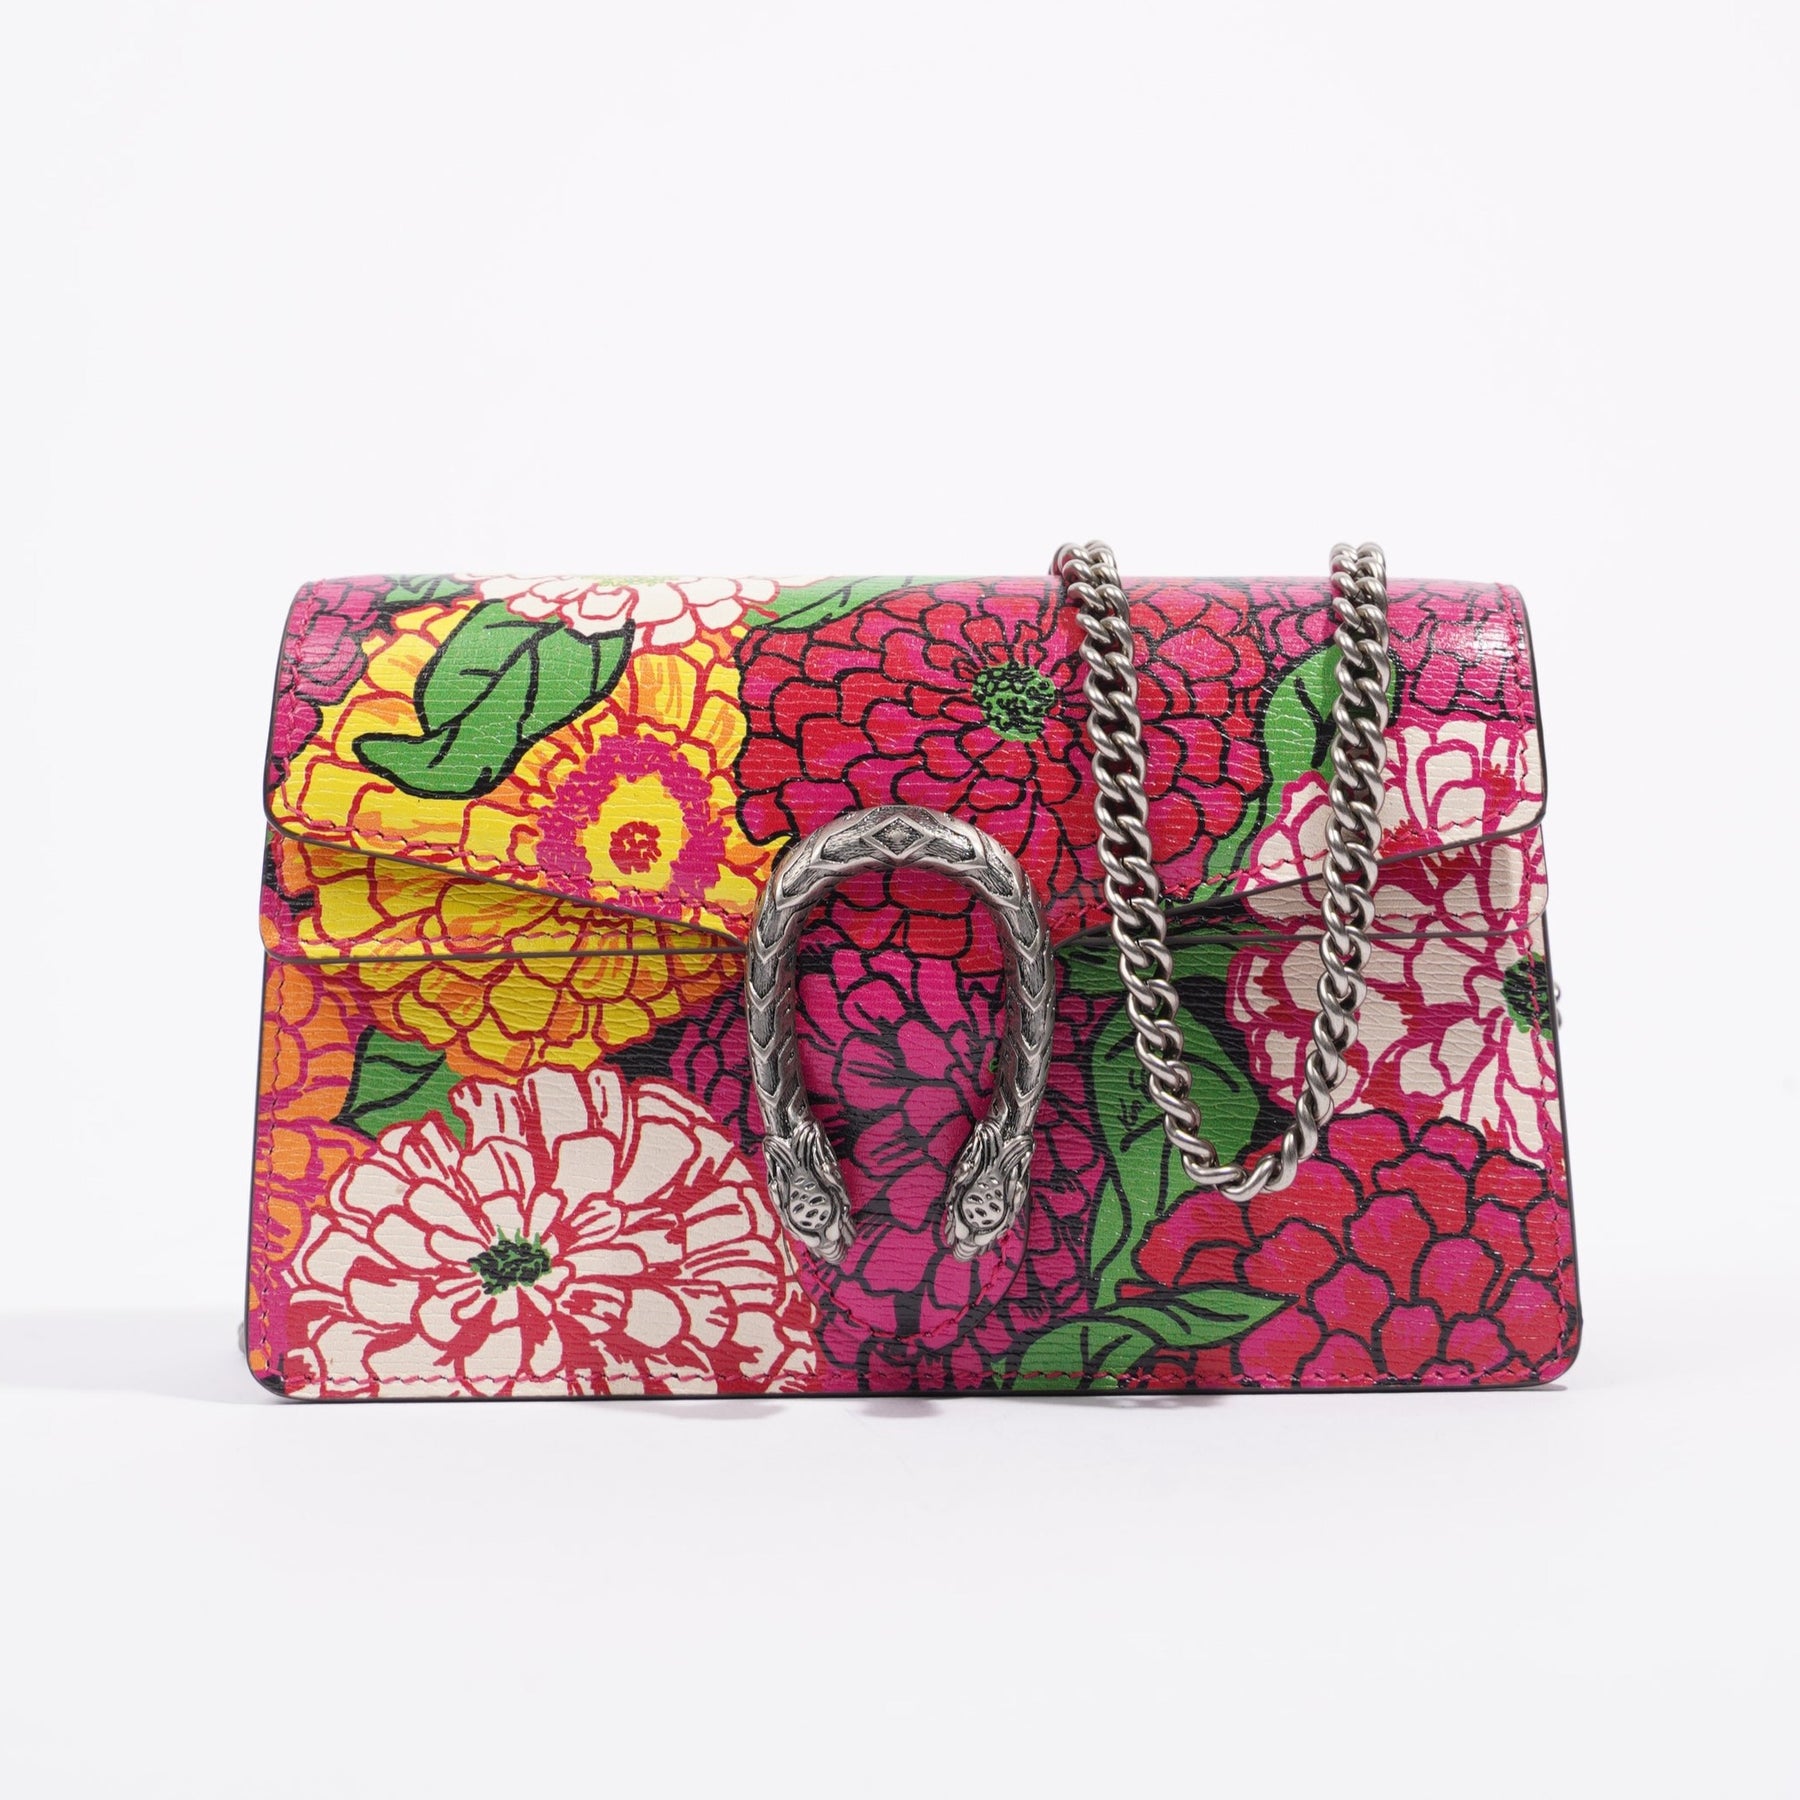 Gucci Ken Scott Print Dionysus Super Mini Bag